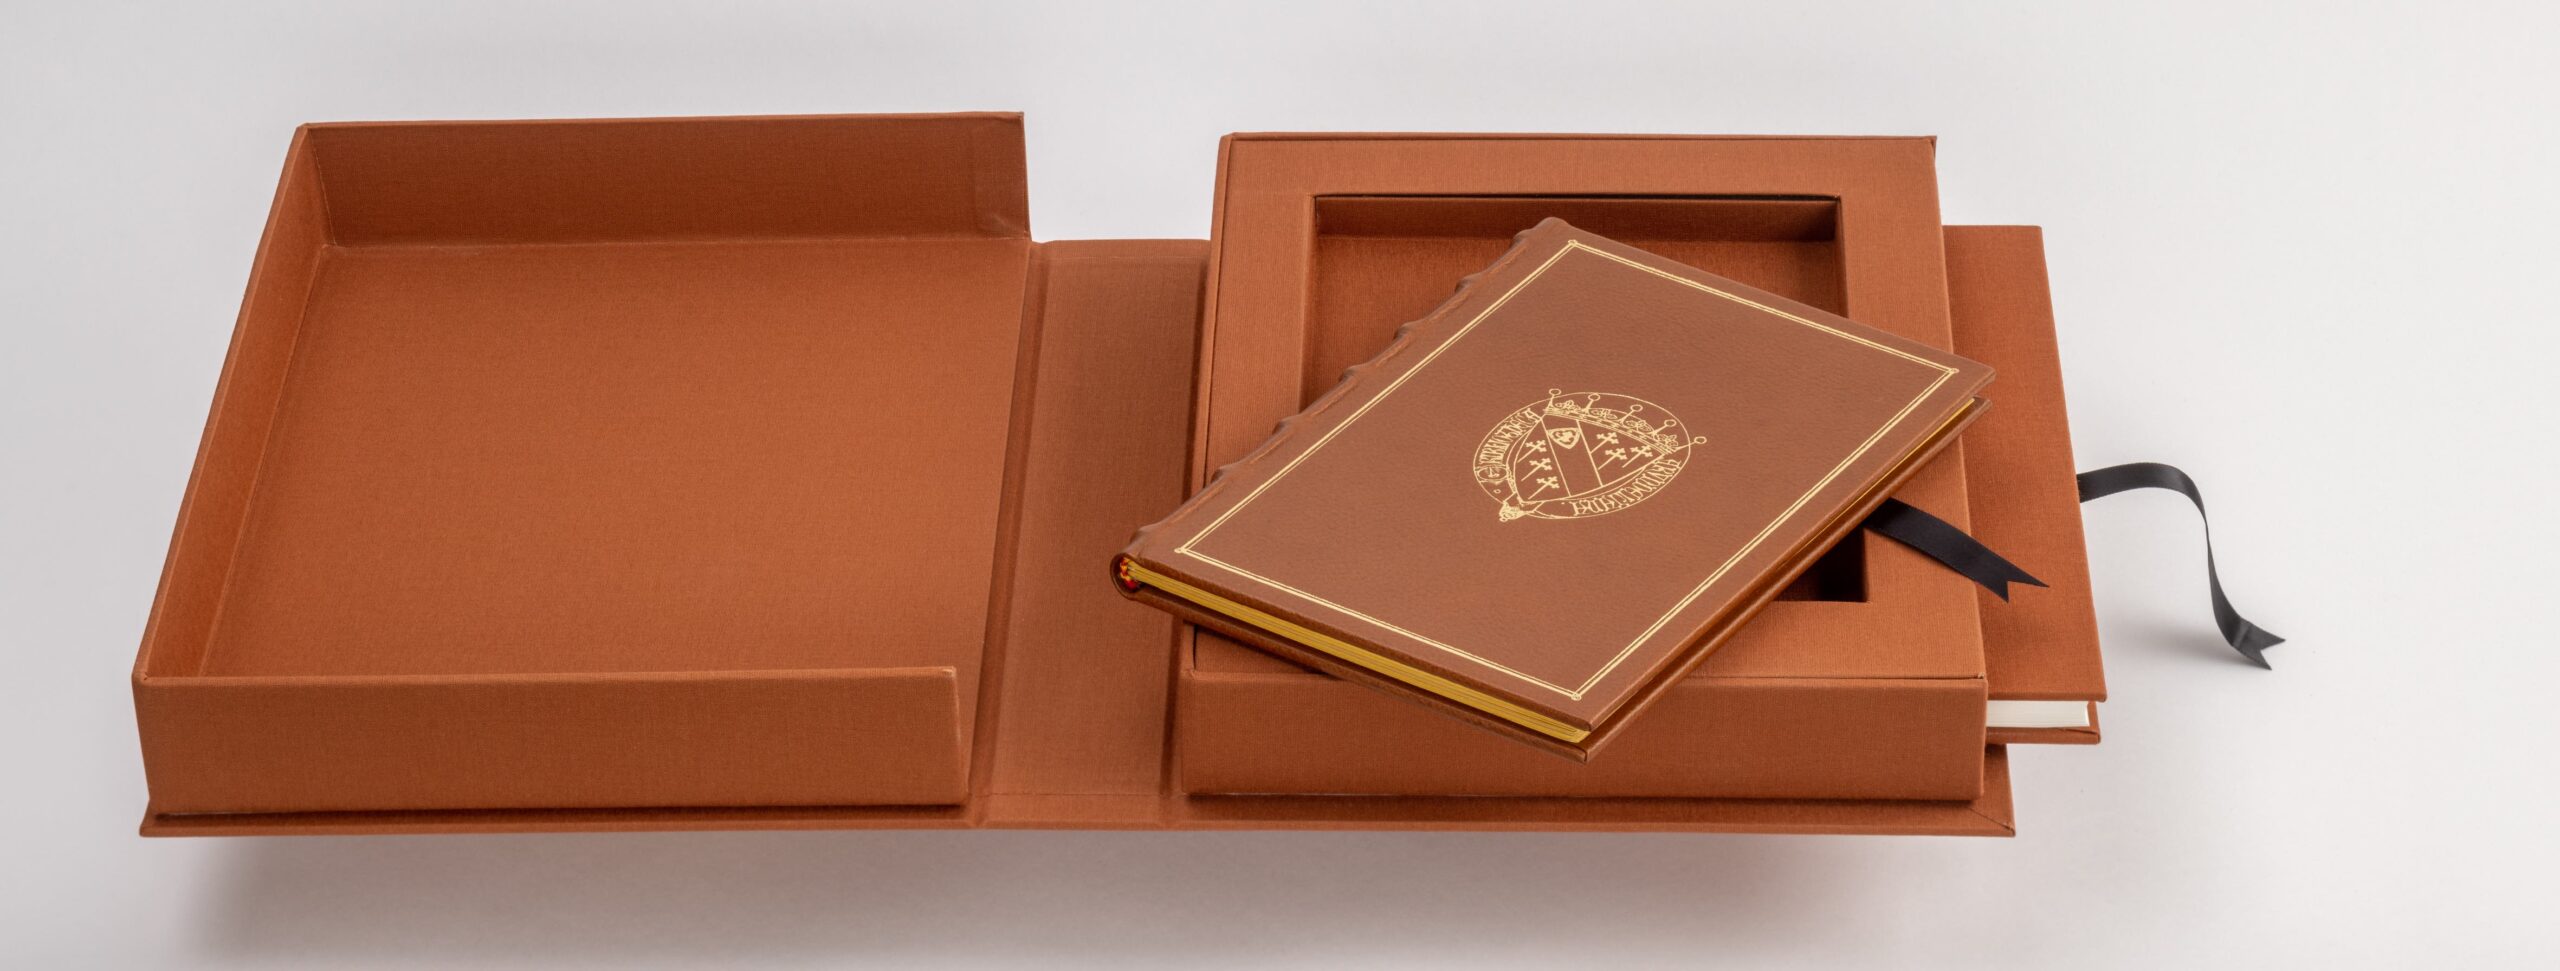 Faksimile-Ausgabe von der Tabula Cebetis mit aufgeschlagener Schmuckkassette. Das Faksimile mit goldgeprägten Ledereinband liegt schräg auf der Kassette.